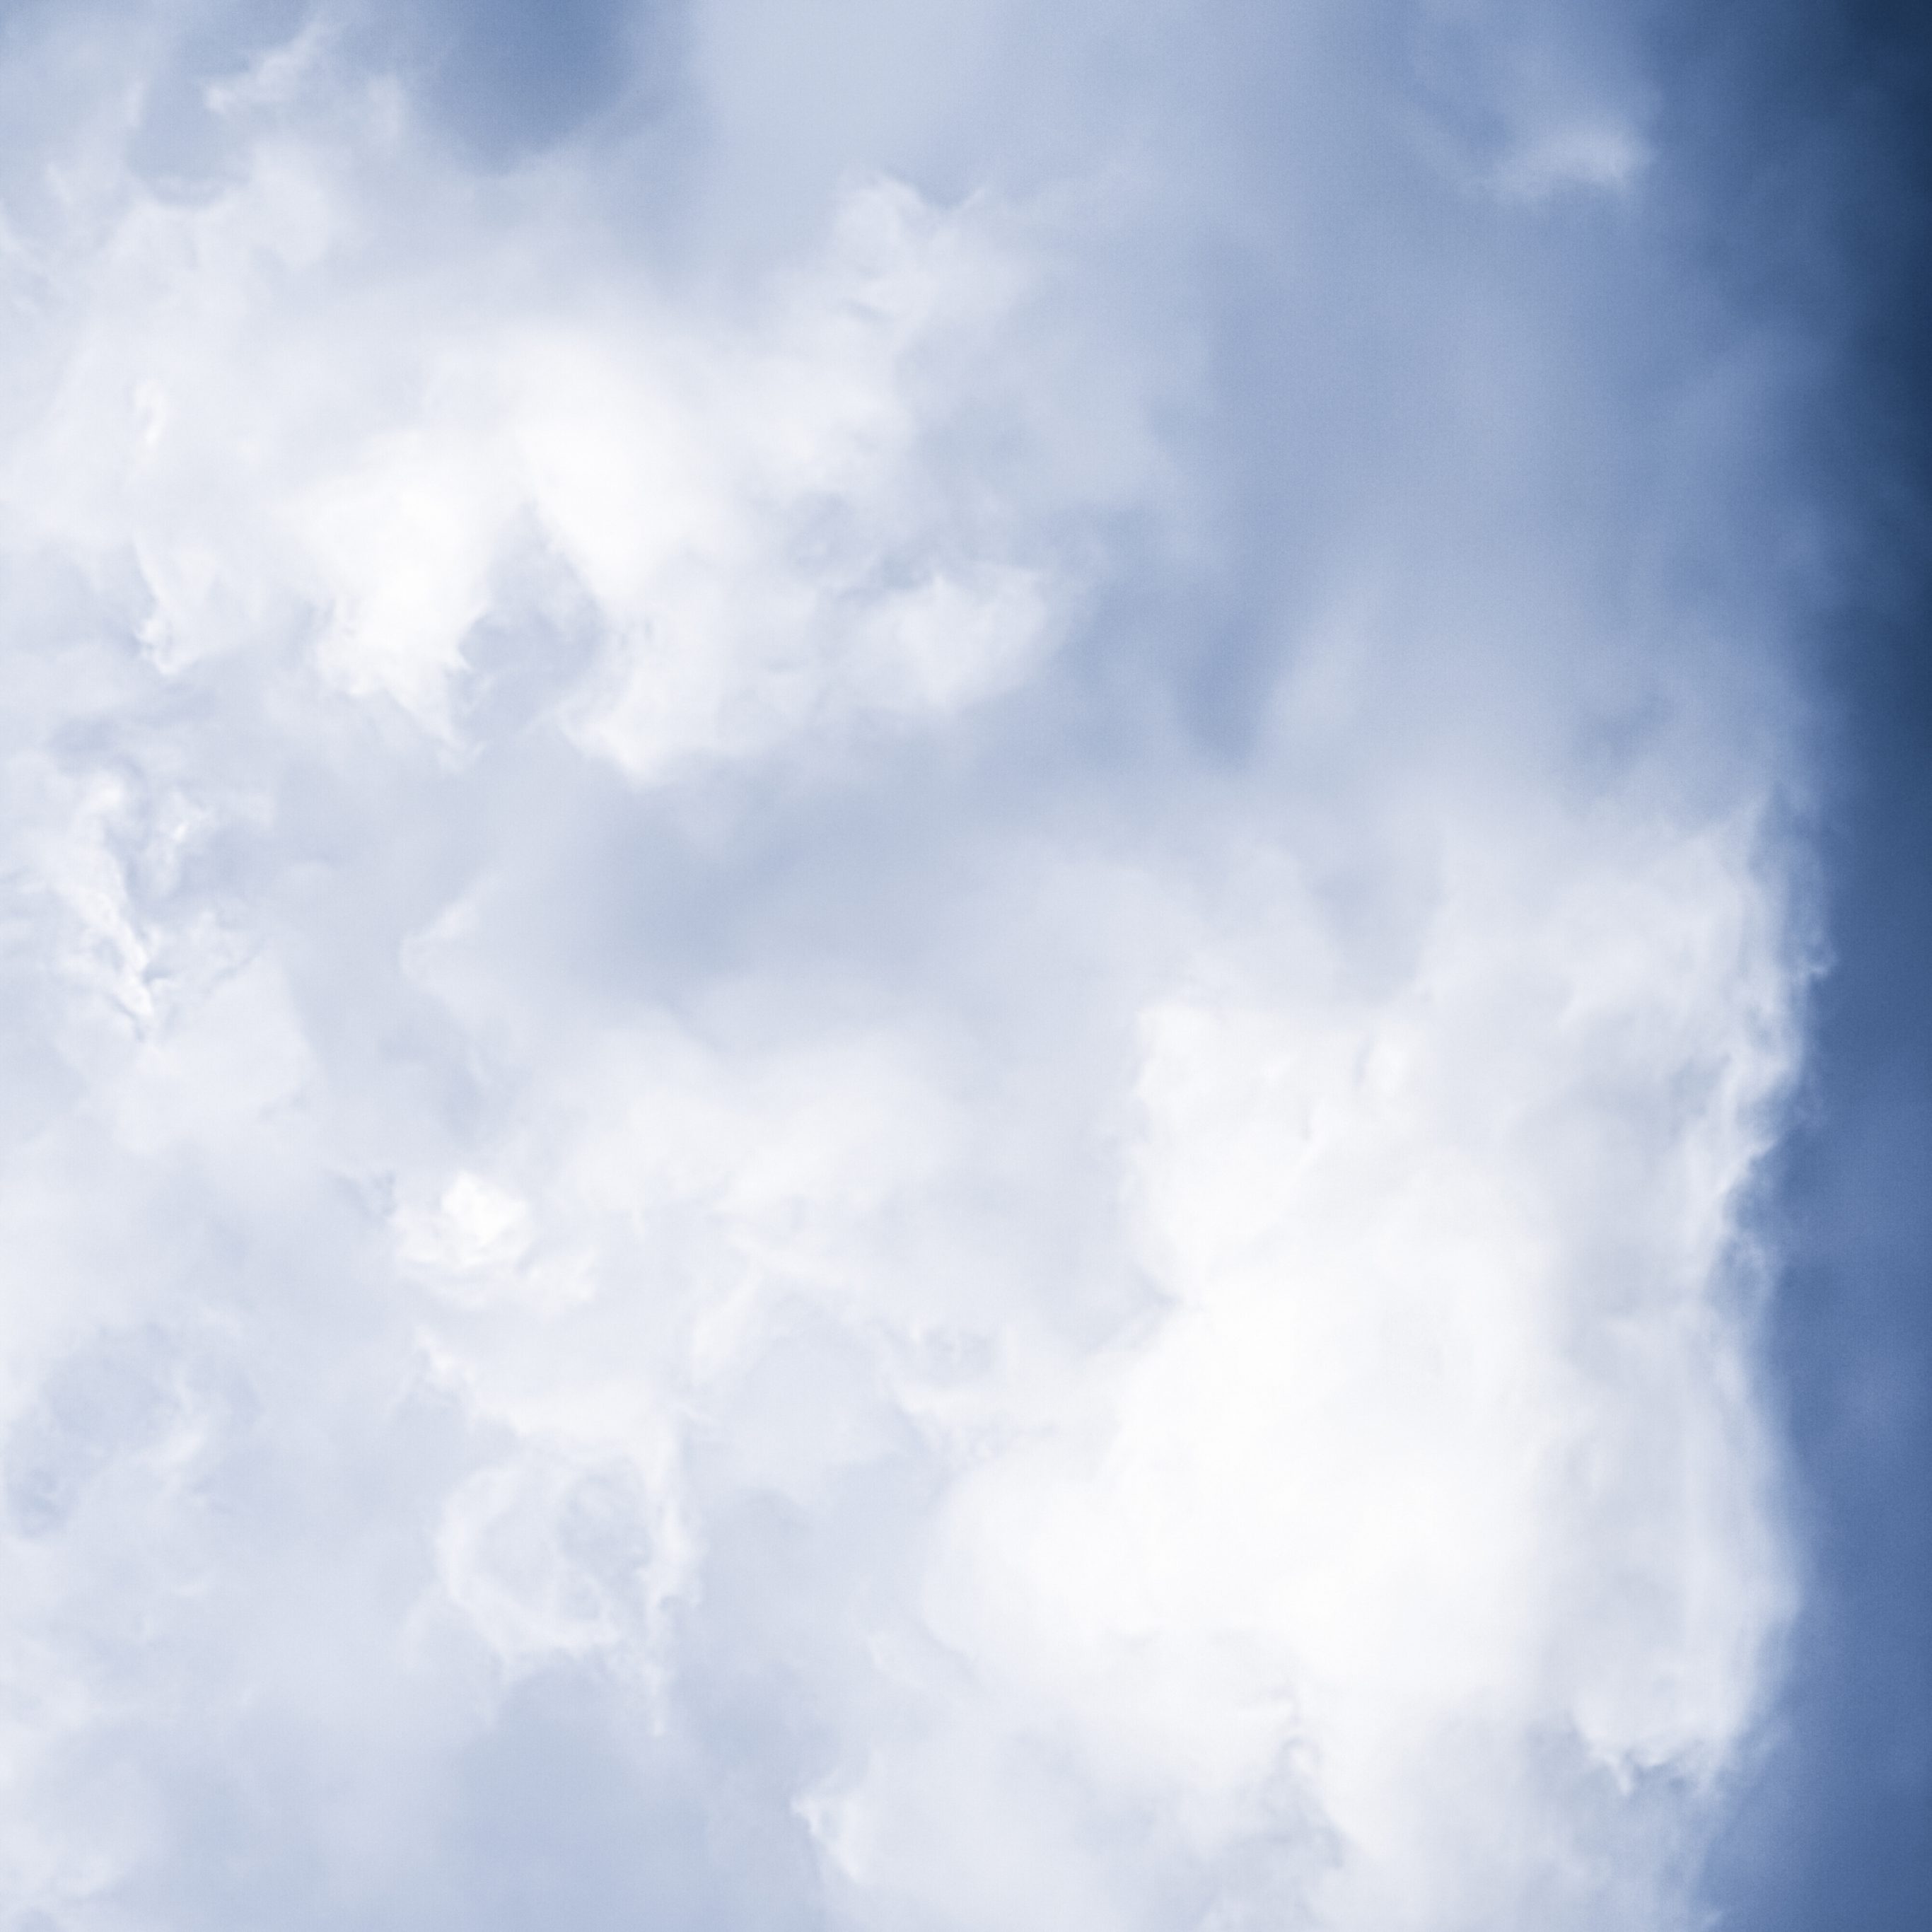 iPad Pro 12.9 wallpapers Minimalist Blue Sky Cloudy iPad Wallpaper